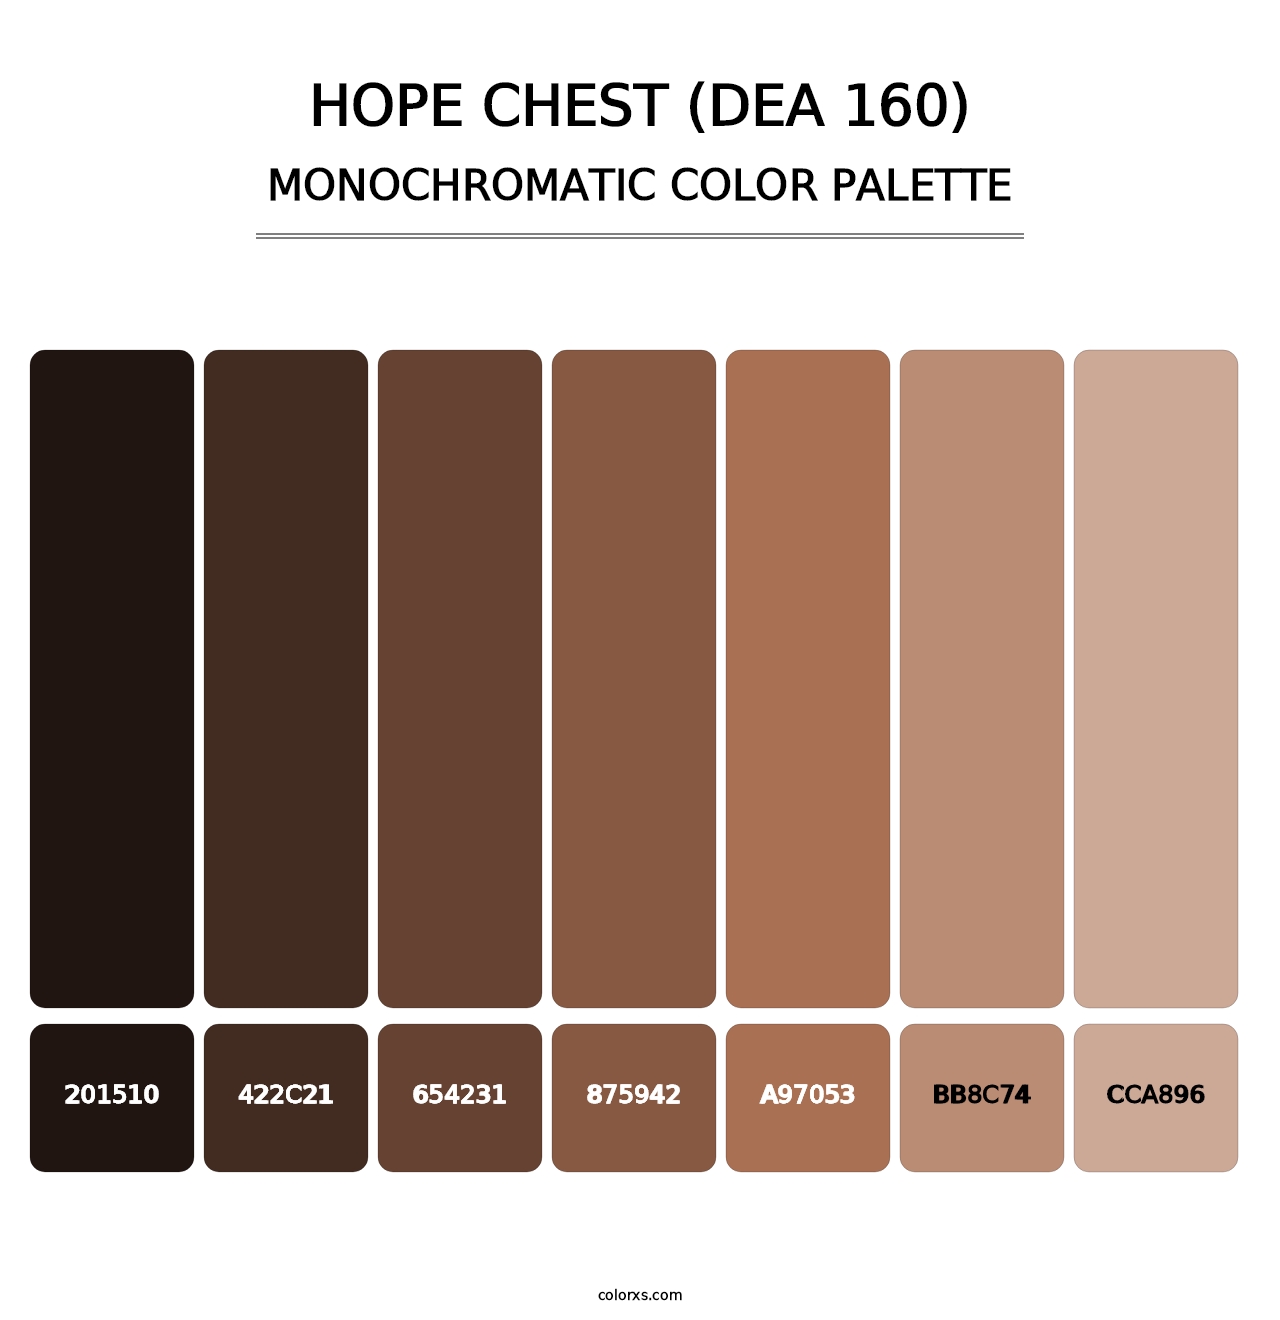 Hope Chest (DEA 160) - Monochromatic Color Palette